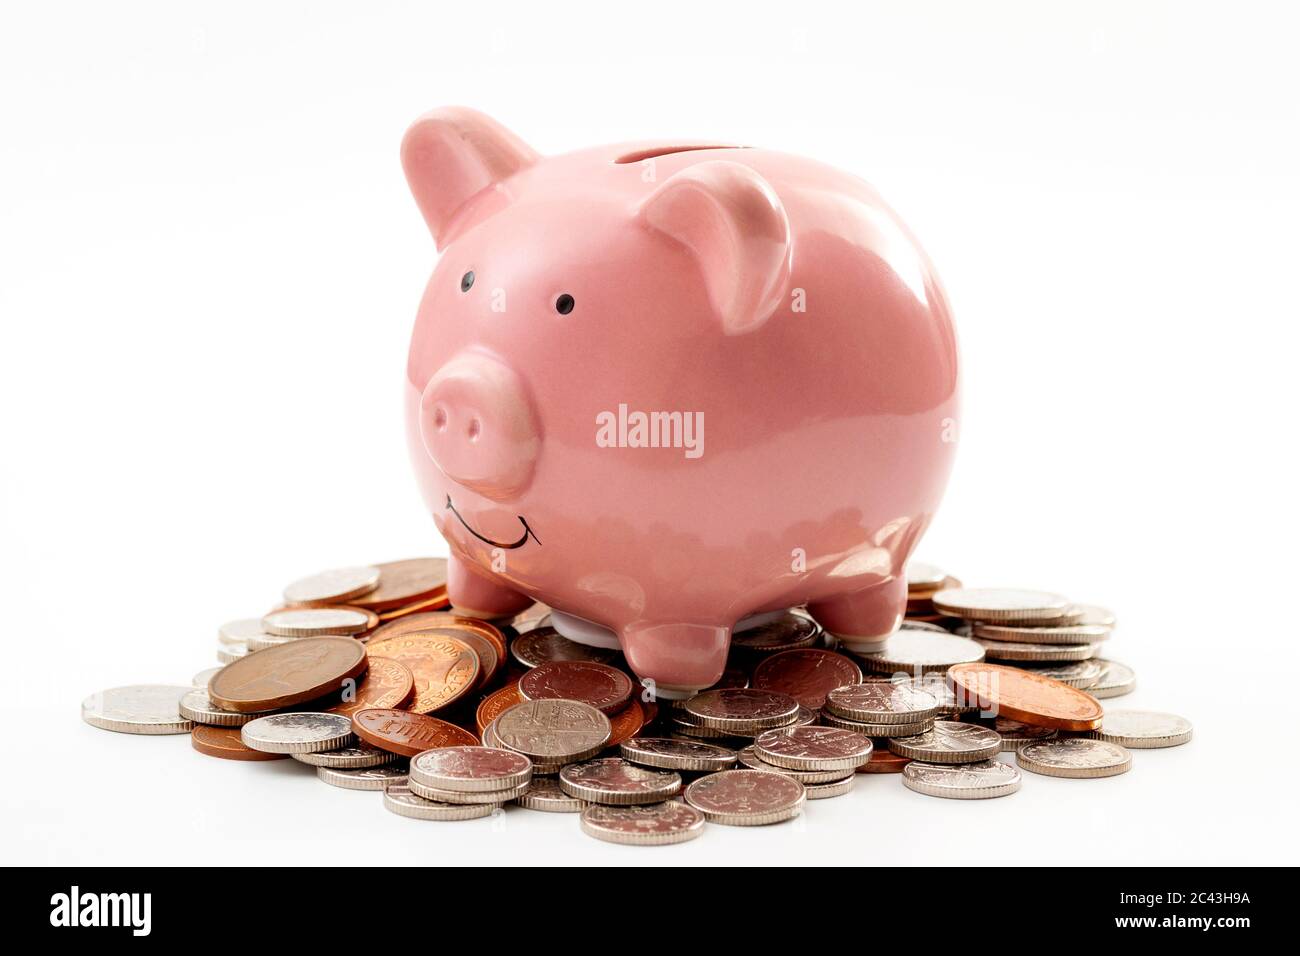 Sparen Sie Geld, finanzielle Planung der persönlichen Finanzen und sparsam Konzept Thema mit einem rosa Sparschwein auf einem Stapel von Bronze und Silber Colo sitzen Stockfoto